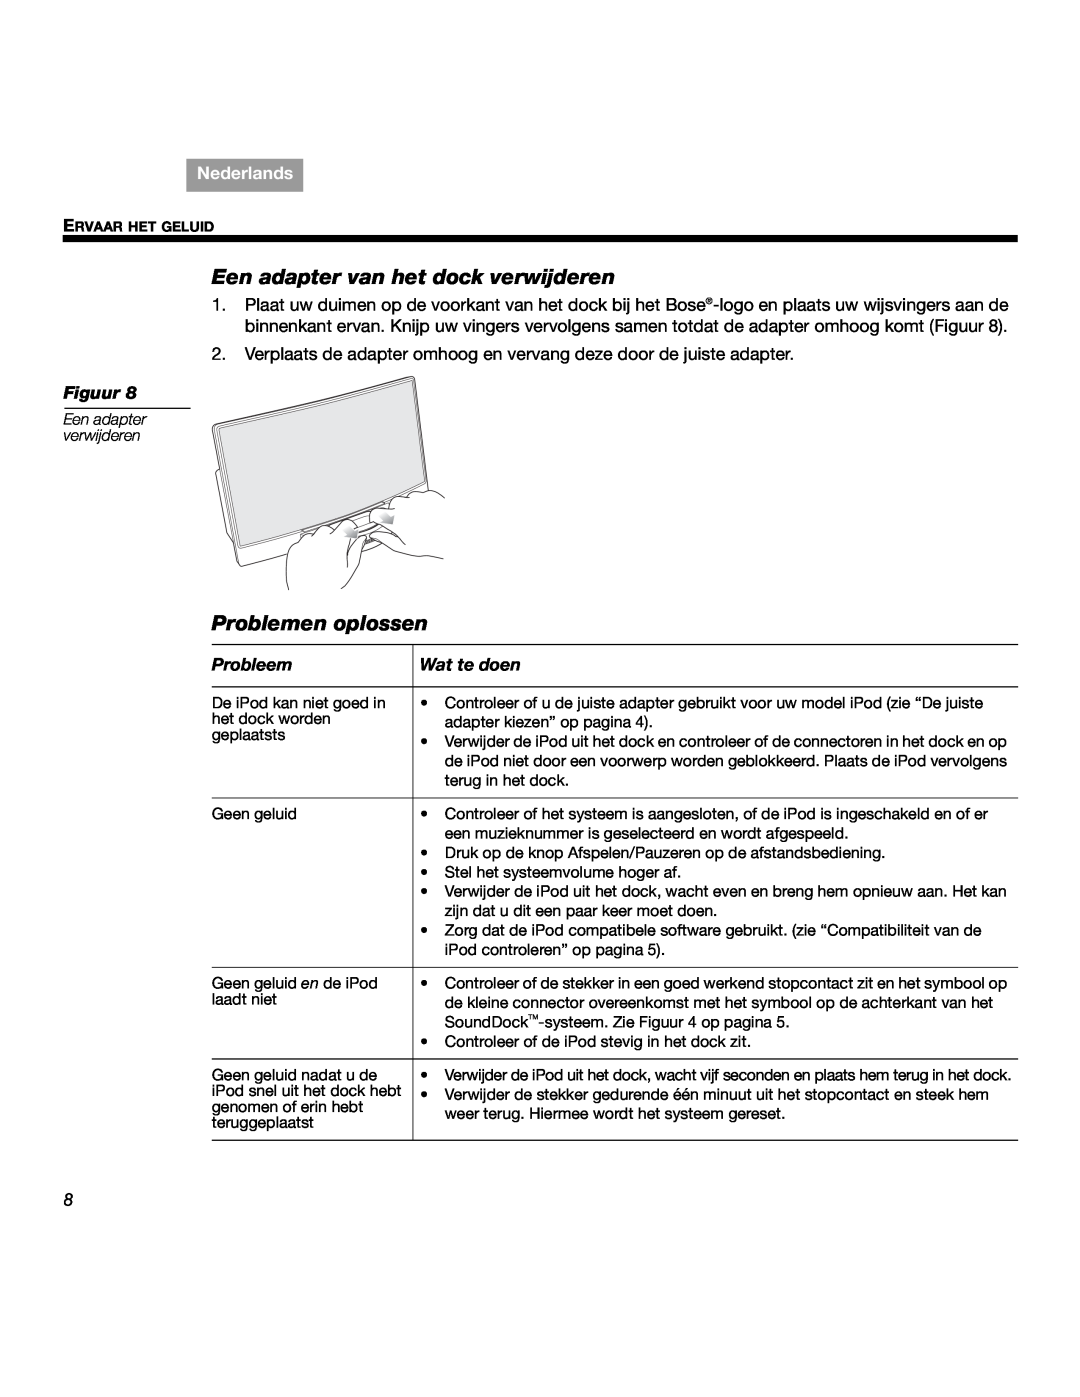 Bose SOUNDDOCKTM manual Een adapter van het dock verwijderen, Problemen oplossen, Probleem, Wat te doen, Nederlands, Figuur 